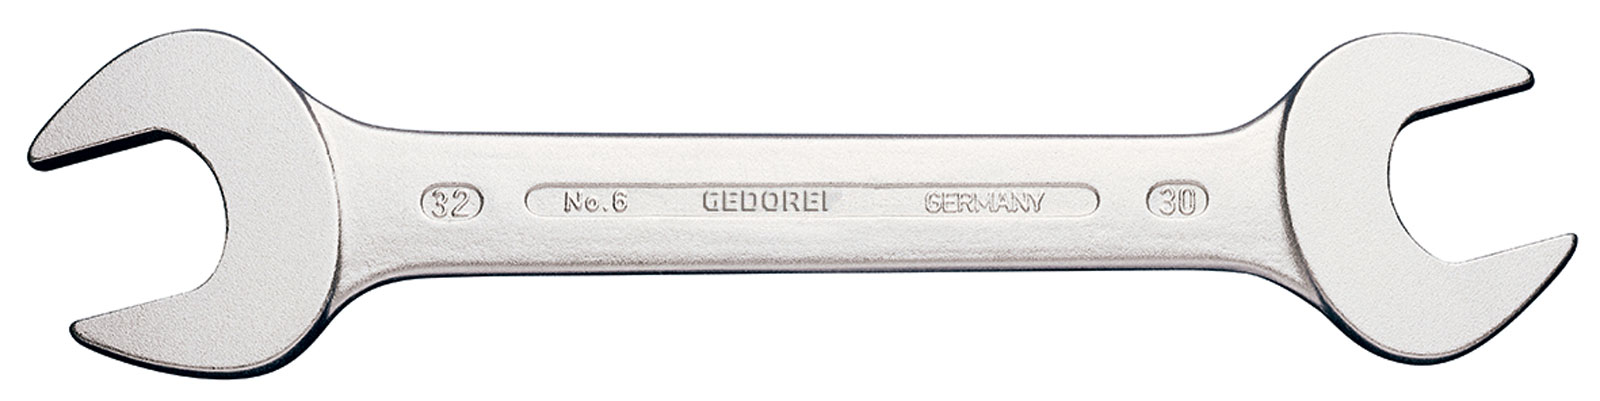 Picture of Doppelmaulschlüssel ähnlich DIN3110 1/4x5/16"Gedore